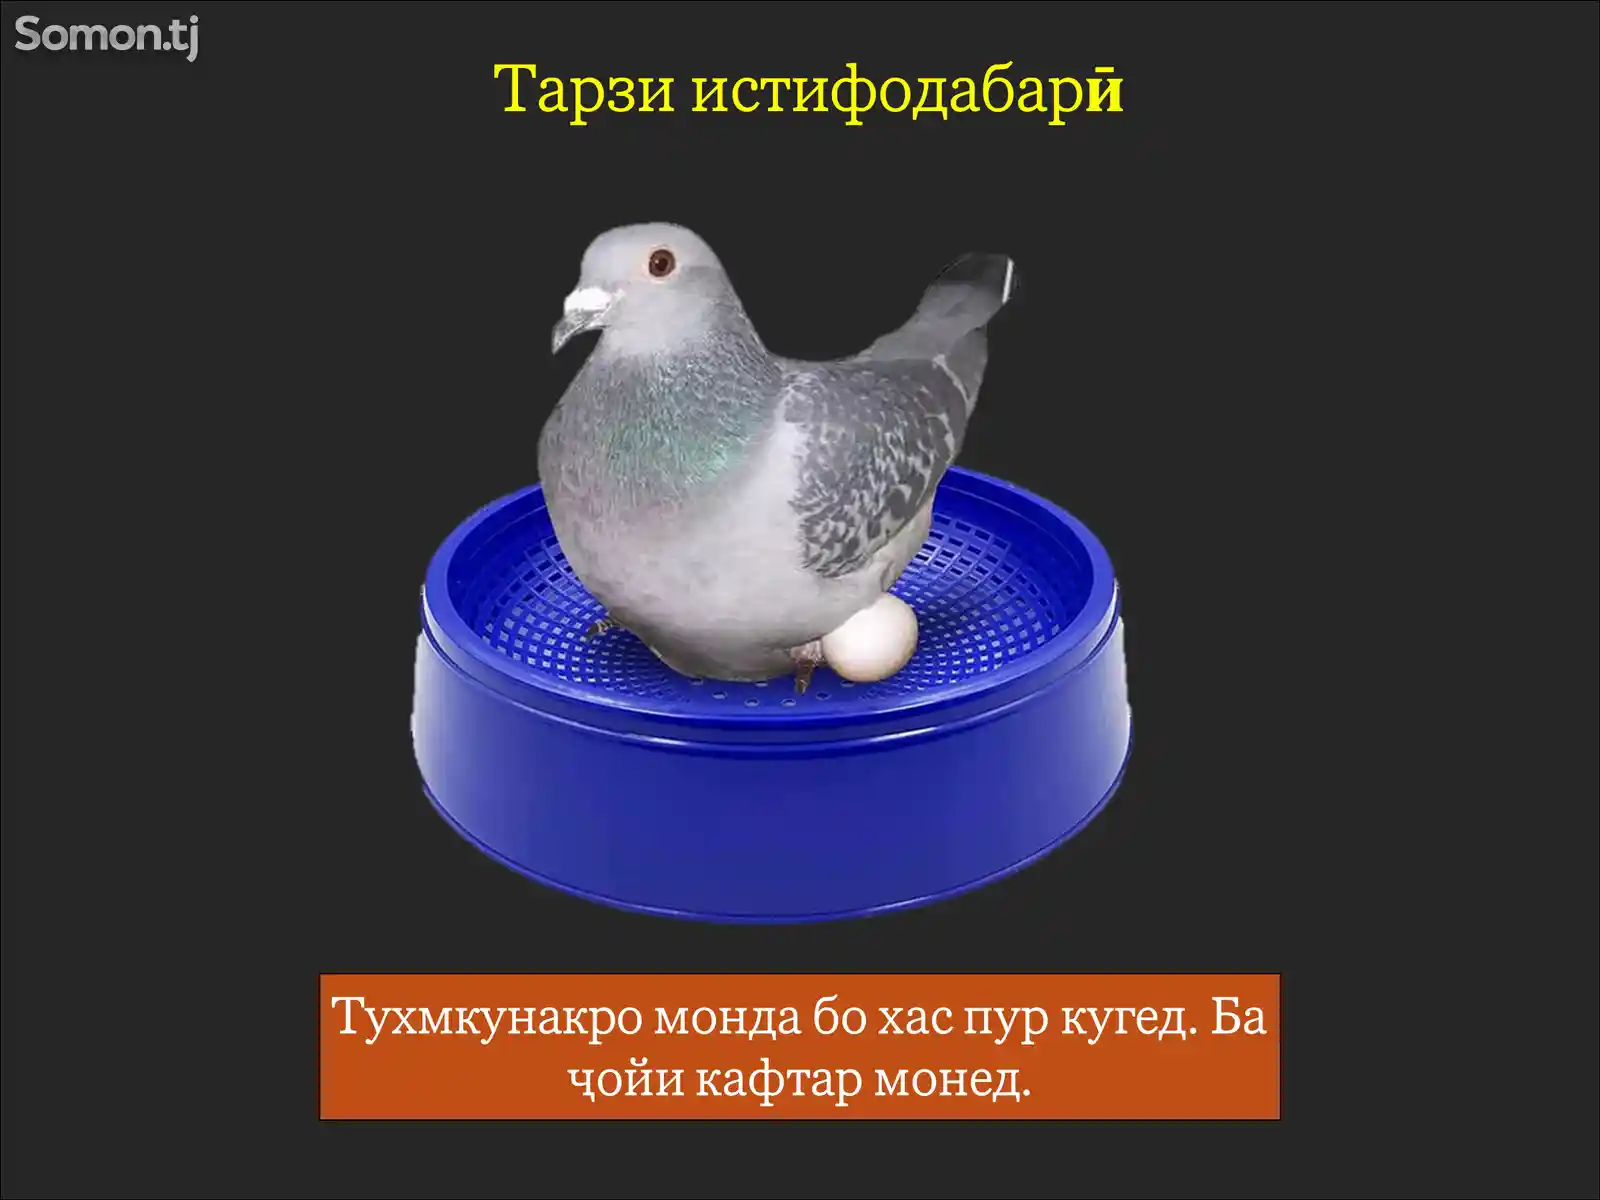 Лона/Пластиковое гнездо для голубей-4